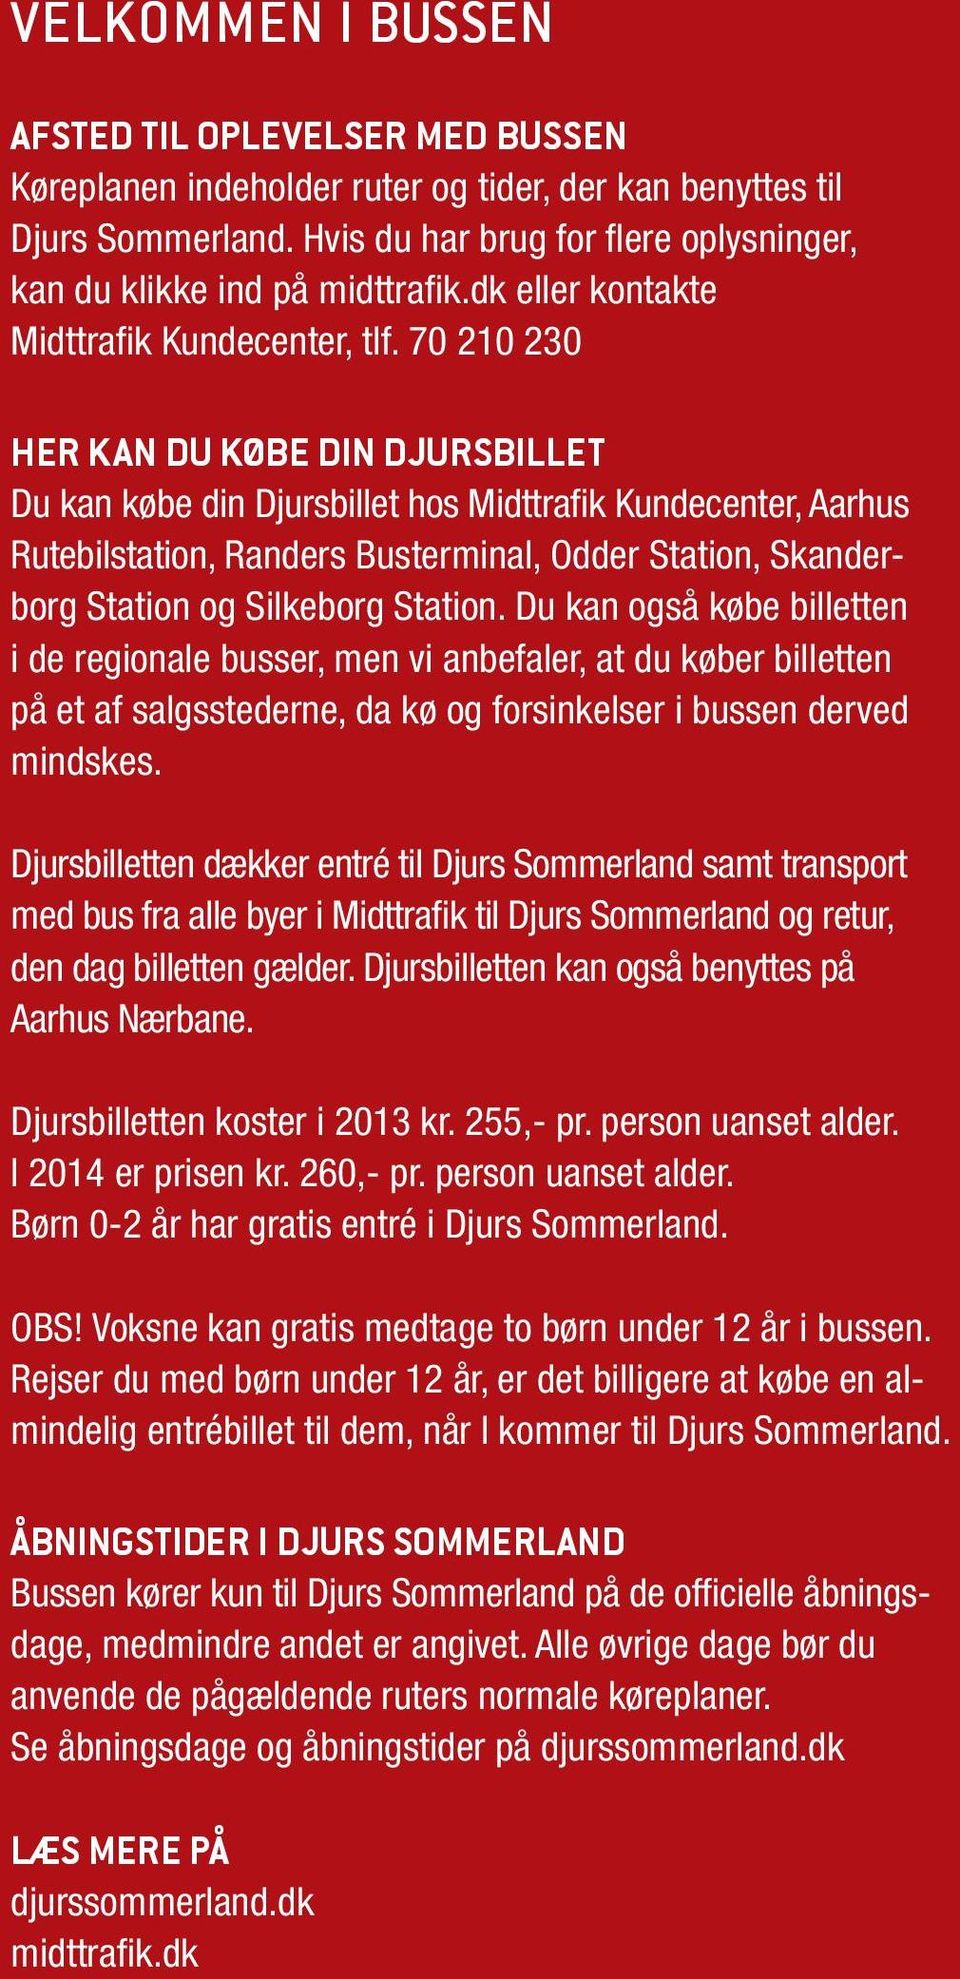 70 210 230 HER KAN DU KØBE DIN DJURSBILLET Du k købe in Djursbillet hos Mittrik Kunecenter, Aarhus Rutebilstation, Rers Busterminal, Oer Station, Skerborg Station og Silkeborg Station.